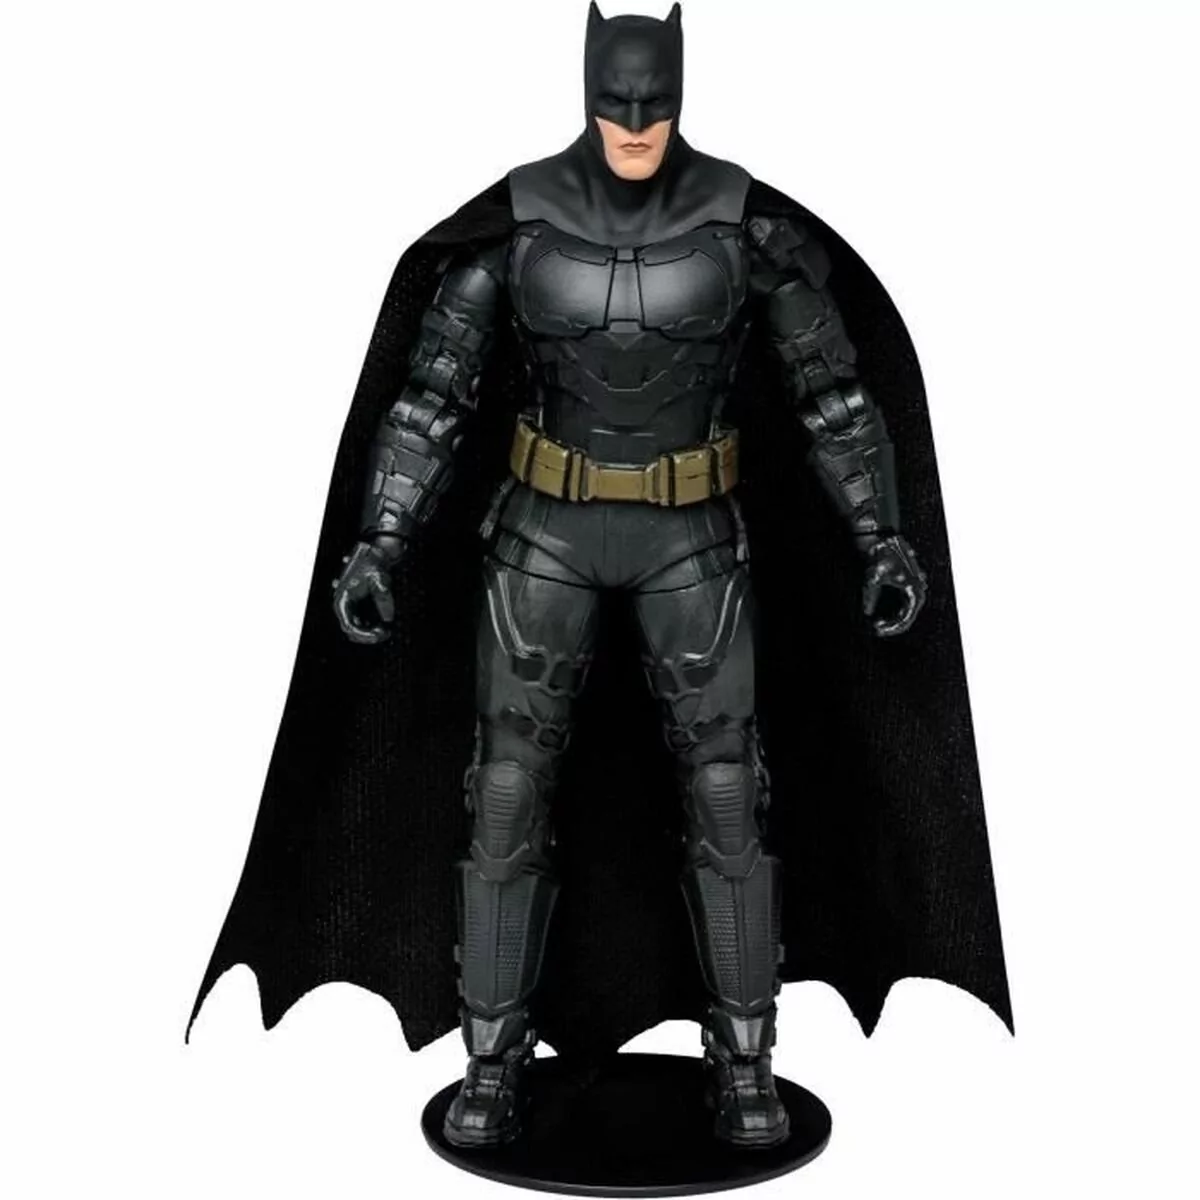 Action Figure The Flash Batman (Ben Affleck) 18 cm (S7190541)